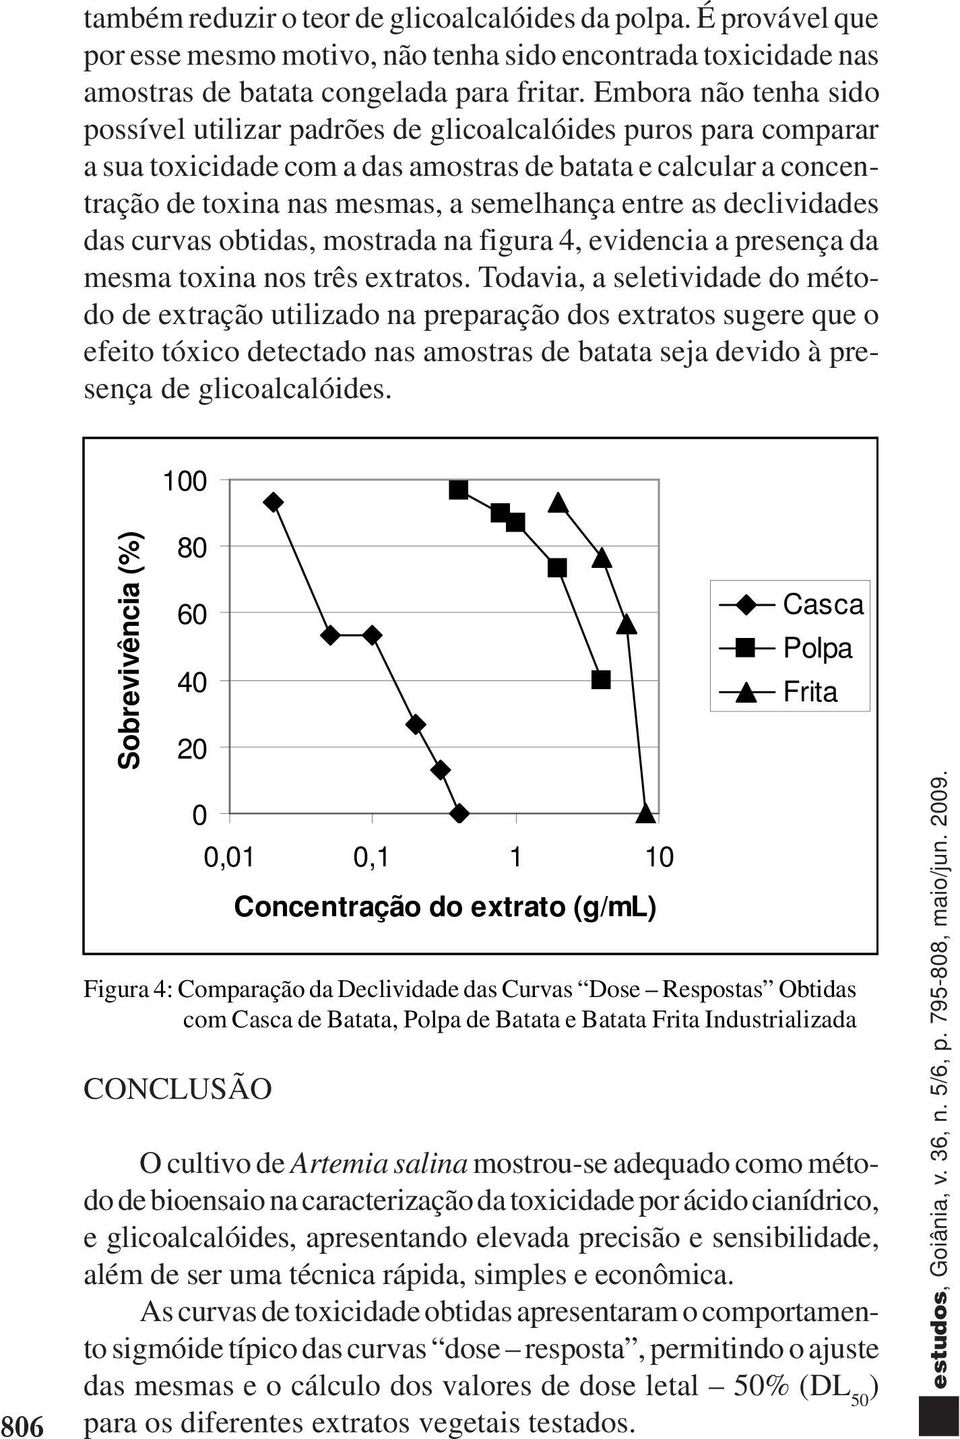 as declividades das curvas obtidas, mostrada na figura 4, evidencia a presença da mesma toxina nos três extratos.